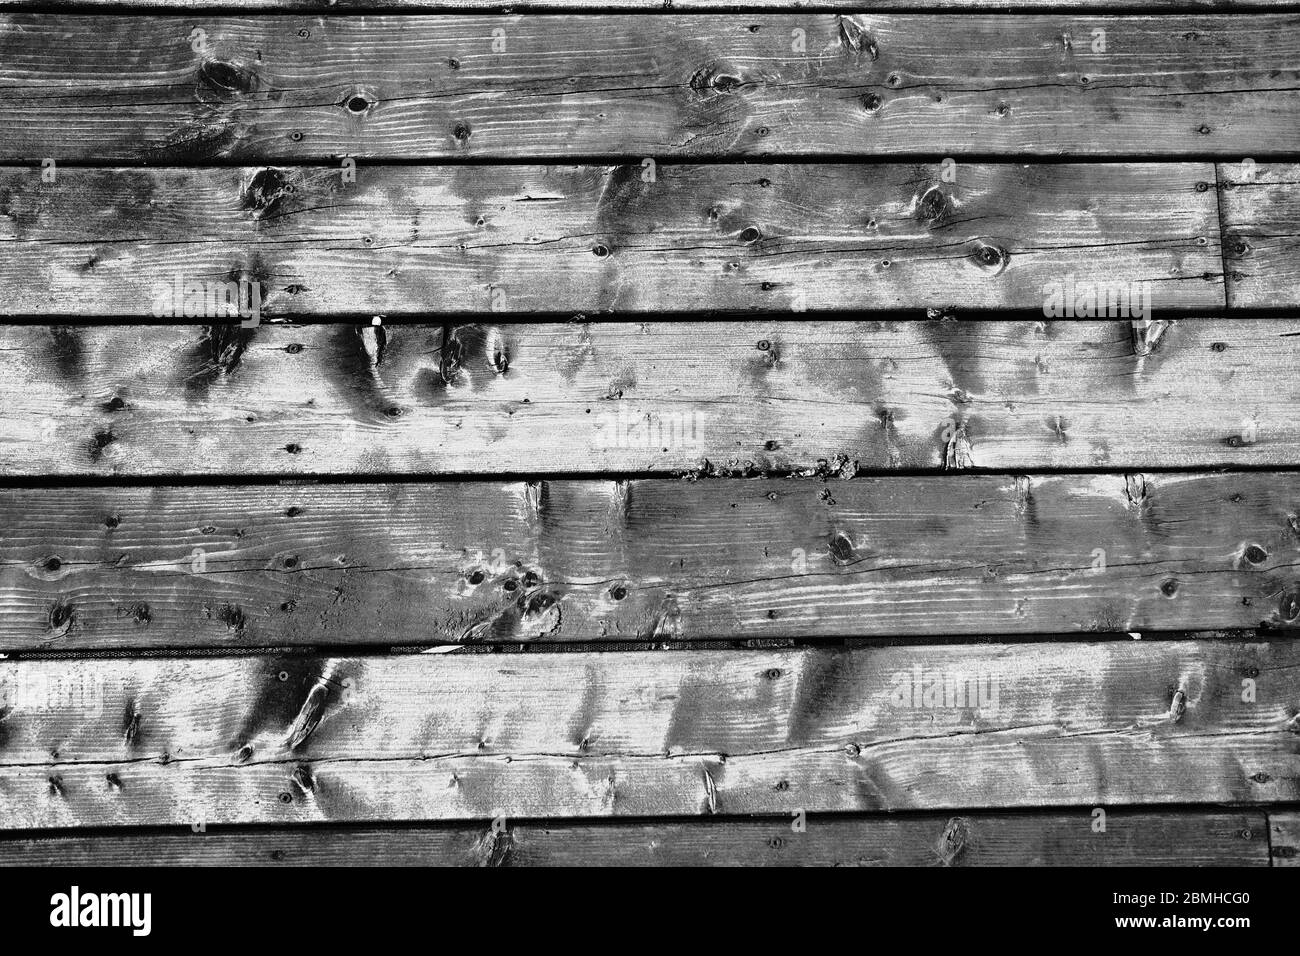 Foto orizzontali in bianco e nero del patio dell'ufficio con terrazza in legno e alcune splendide tavole 2x4 intemperate. Ottawa, ontario, Canada. Foto Stock